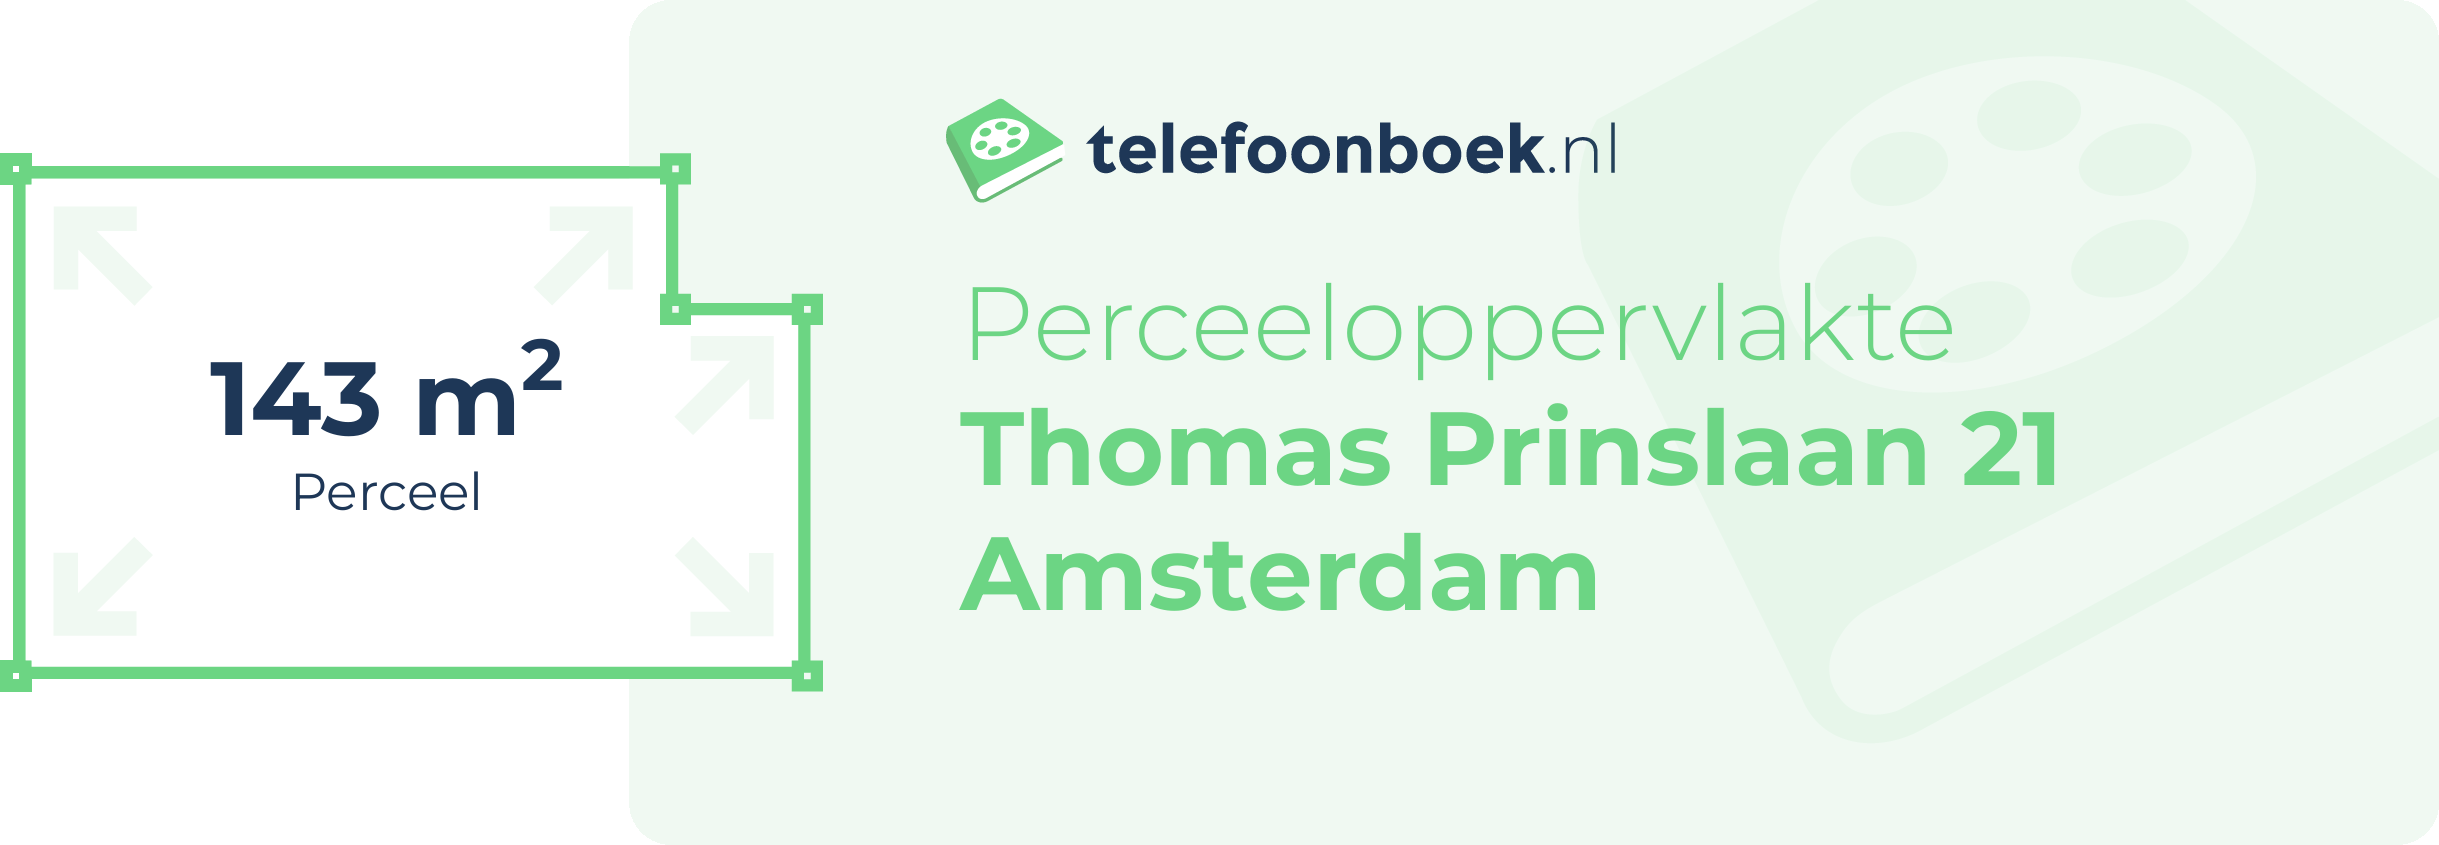 Perceeloppervlakte Thomas Prinslaan 21 Amsterdam